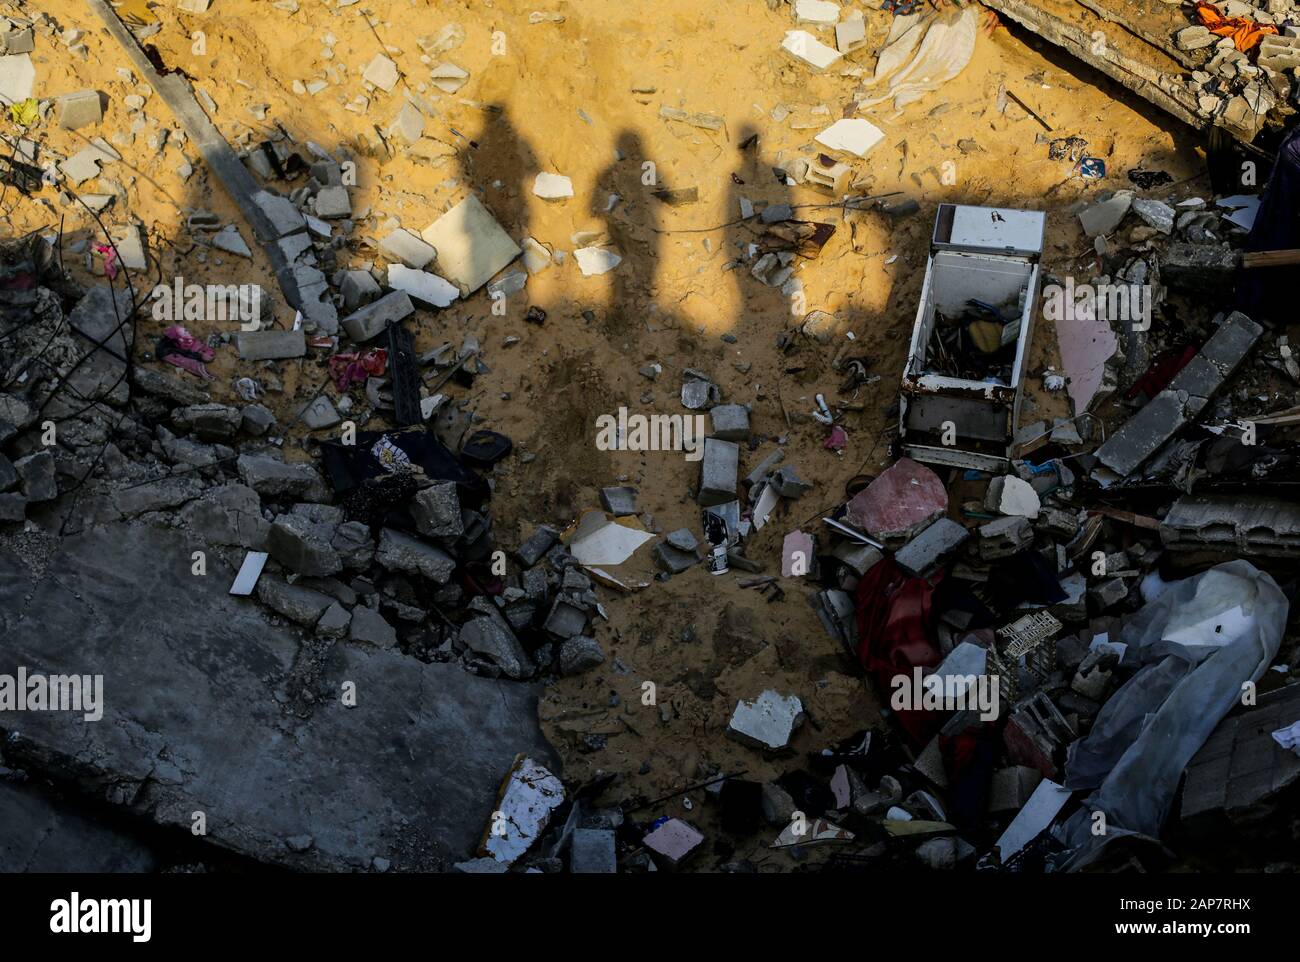 Ciudad De Gaza, Palestina. 19 de enero de 2020. Escombros de la casa destruida de Hamouda Abu Amra. La familia Abu Umrah, formada por 19 personas, perdió su casa de cinco pisos después de una incursión israelí en Gaza el 13 de noviembre de 2019. Crédito: Sopa Images Limited/Alamy Live News Foto de stock